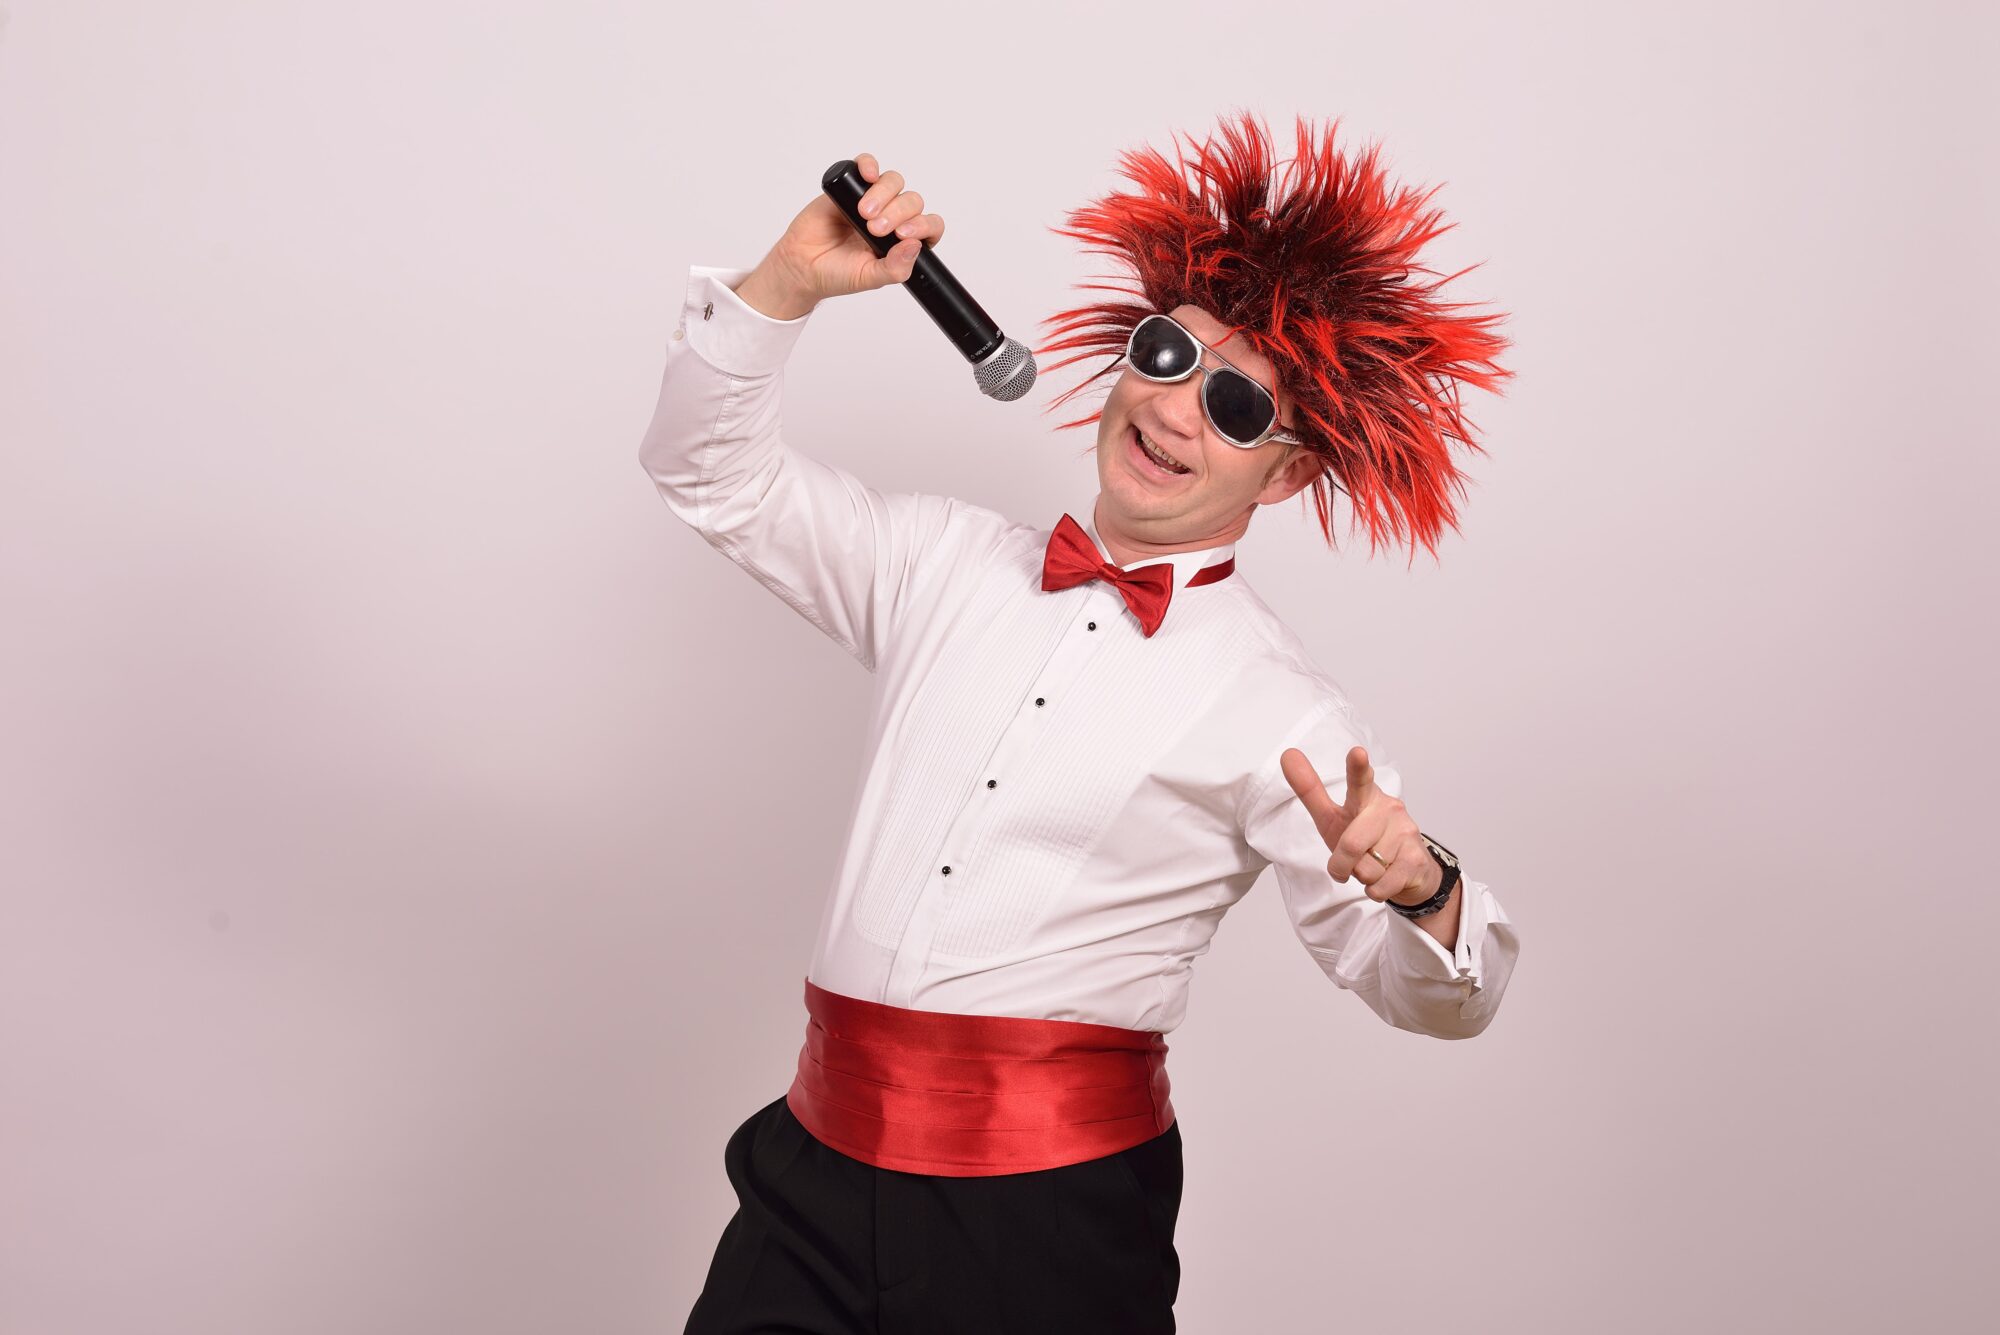 Wujek Kris czyli Krzysztof Kończyk ubrany w białą koszulę, czerwony pas i muszkę oraz w czerwonej peruce na głowie śpiewa do mikrofonu